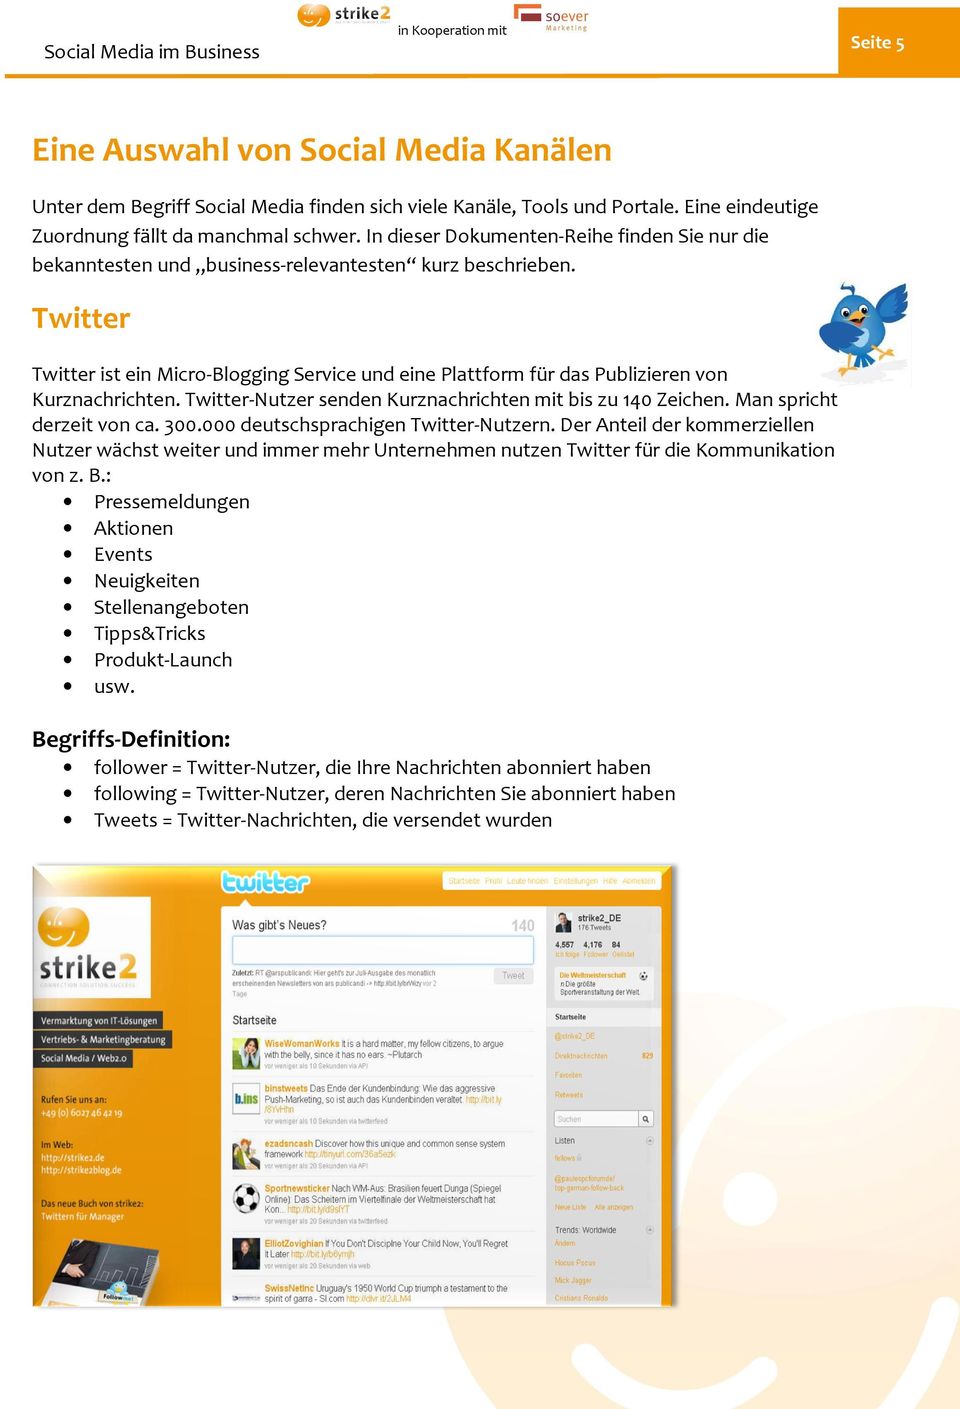 Twitter Twitter ist ein Micro-Blogging Service und eine Plattform für das Publizieren von Kurznachrichten. Twitter-Nutzer Nutzer senden Kurznachrichten mit bis zu 140 Zeichen.